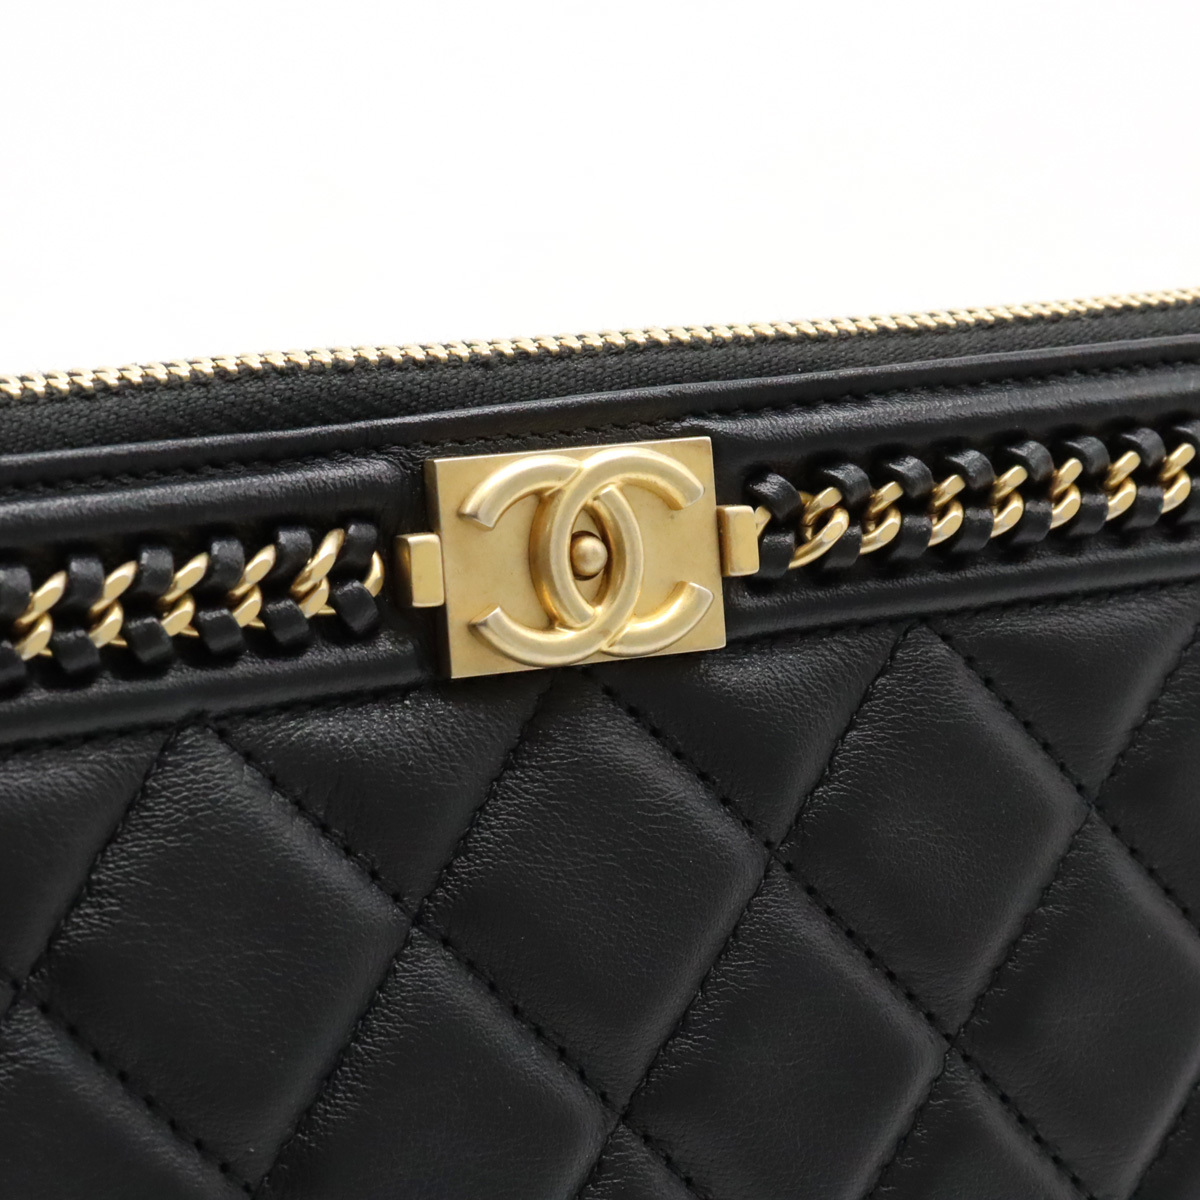 CHANEL Chanel Boy Chanel matelasse здесь Mark клатч сумка кожа черный чёрный Gold металлические принадлежности 